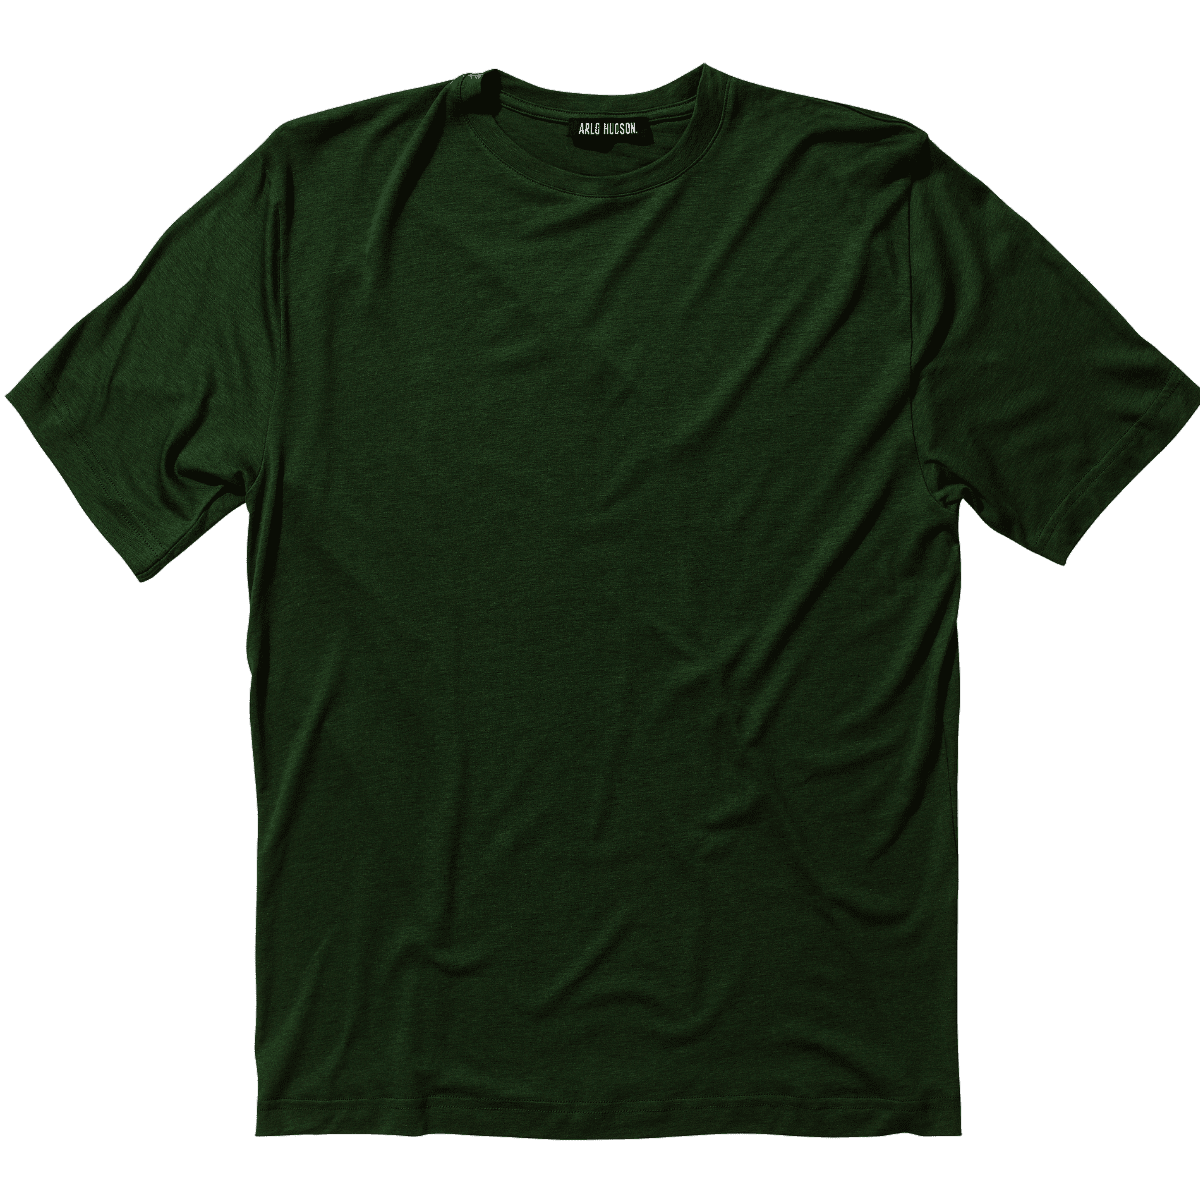 Forest T-Shirt - Medium